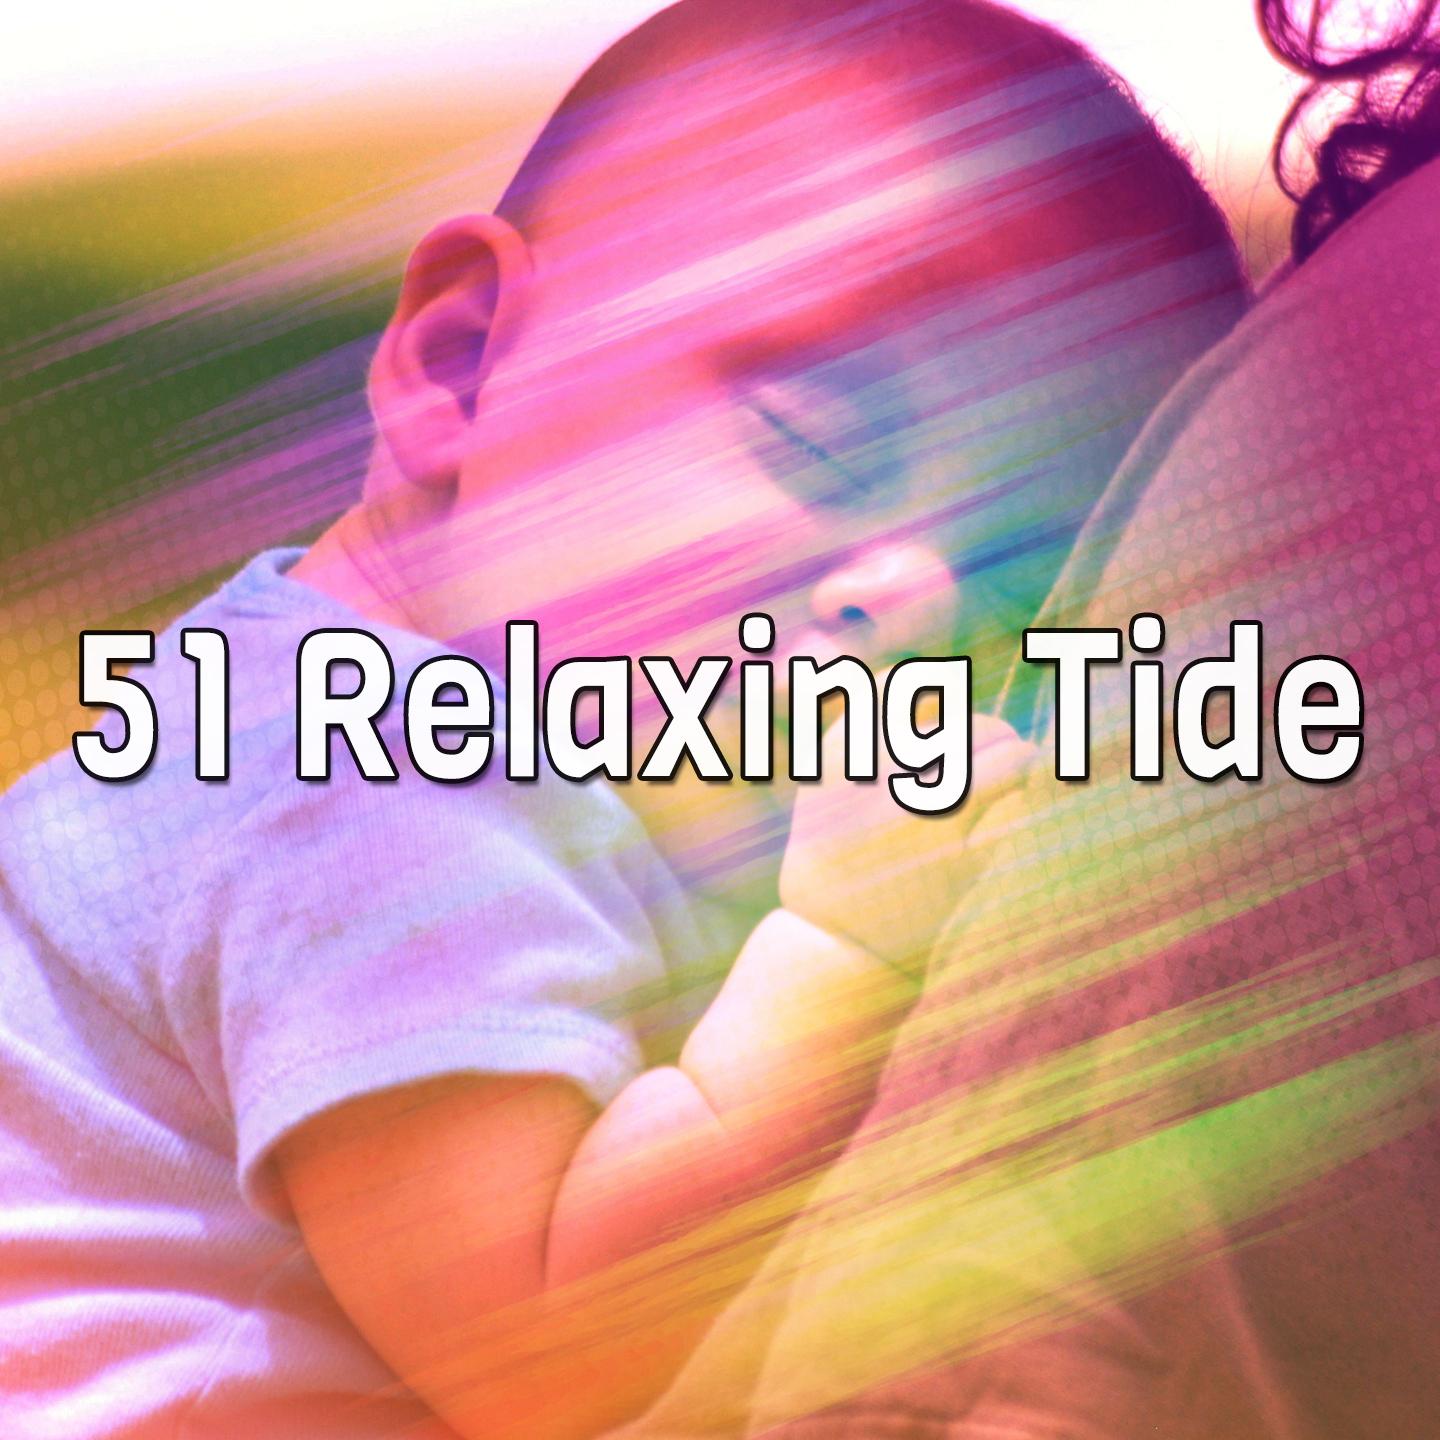 51 Relaxing Tide